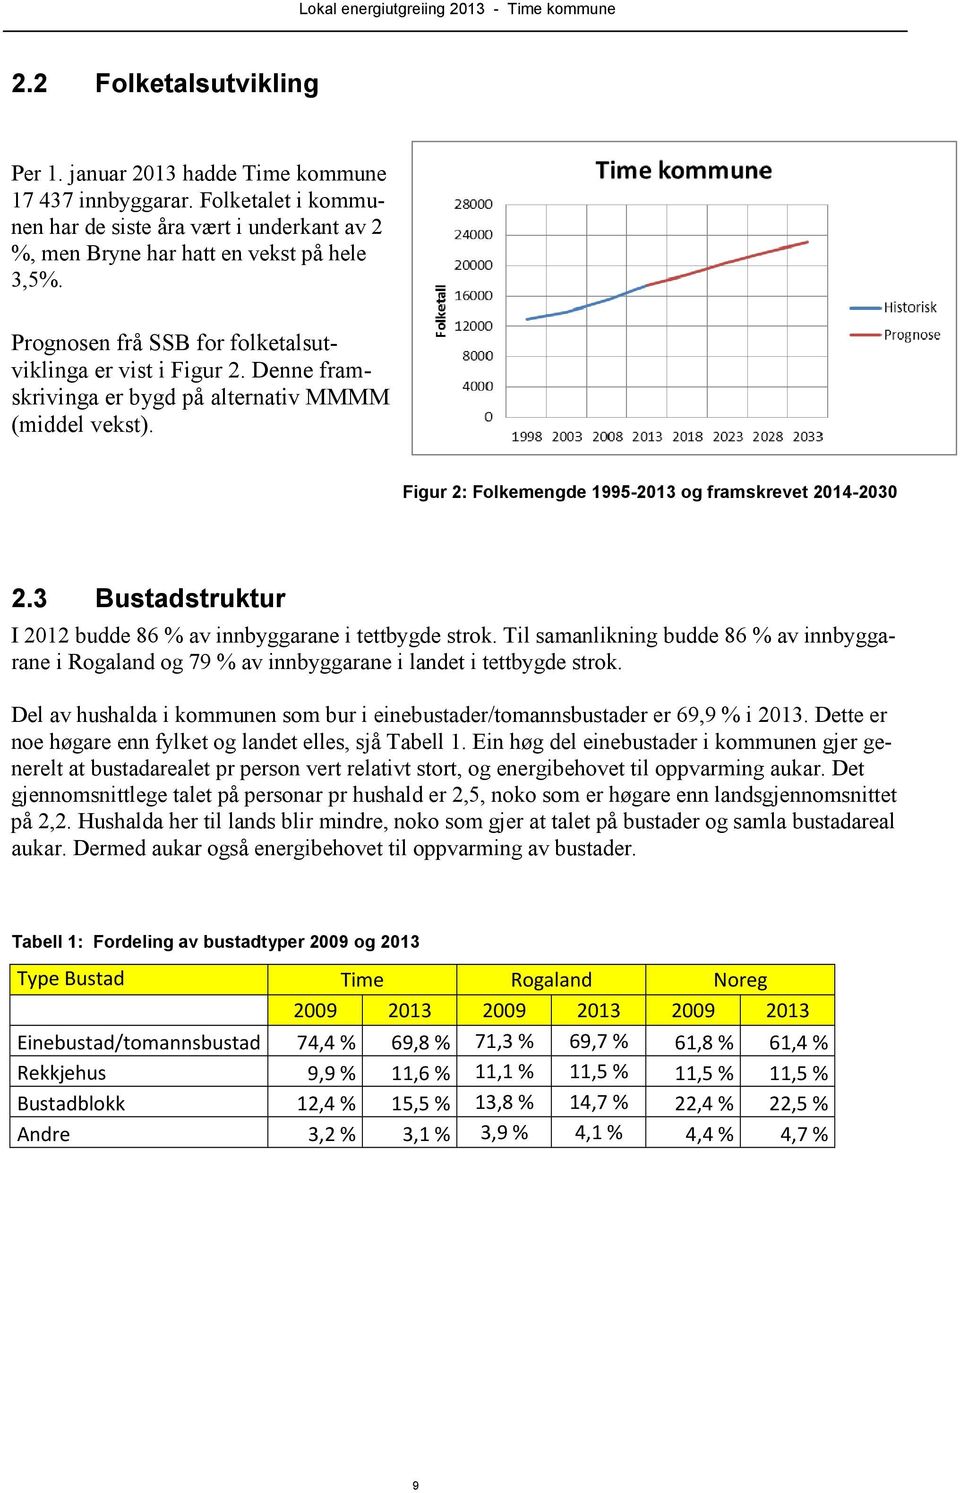 3 Bustadstruktur I 2012 budde 86 % av innbyggarane i tettbygde strok. Til samanlikning budde 86 % av innbyggarane i Rogaland og 79 % av innbyggarane i landet i tettbygde strok.